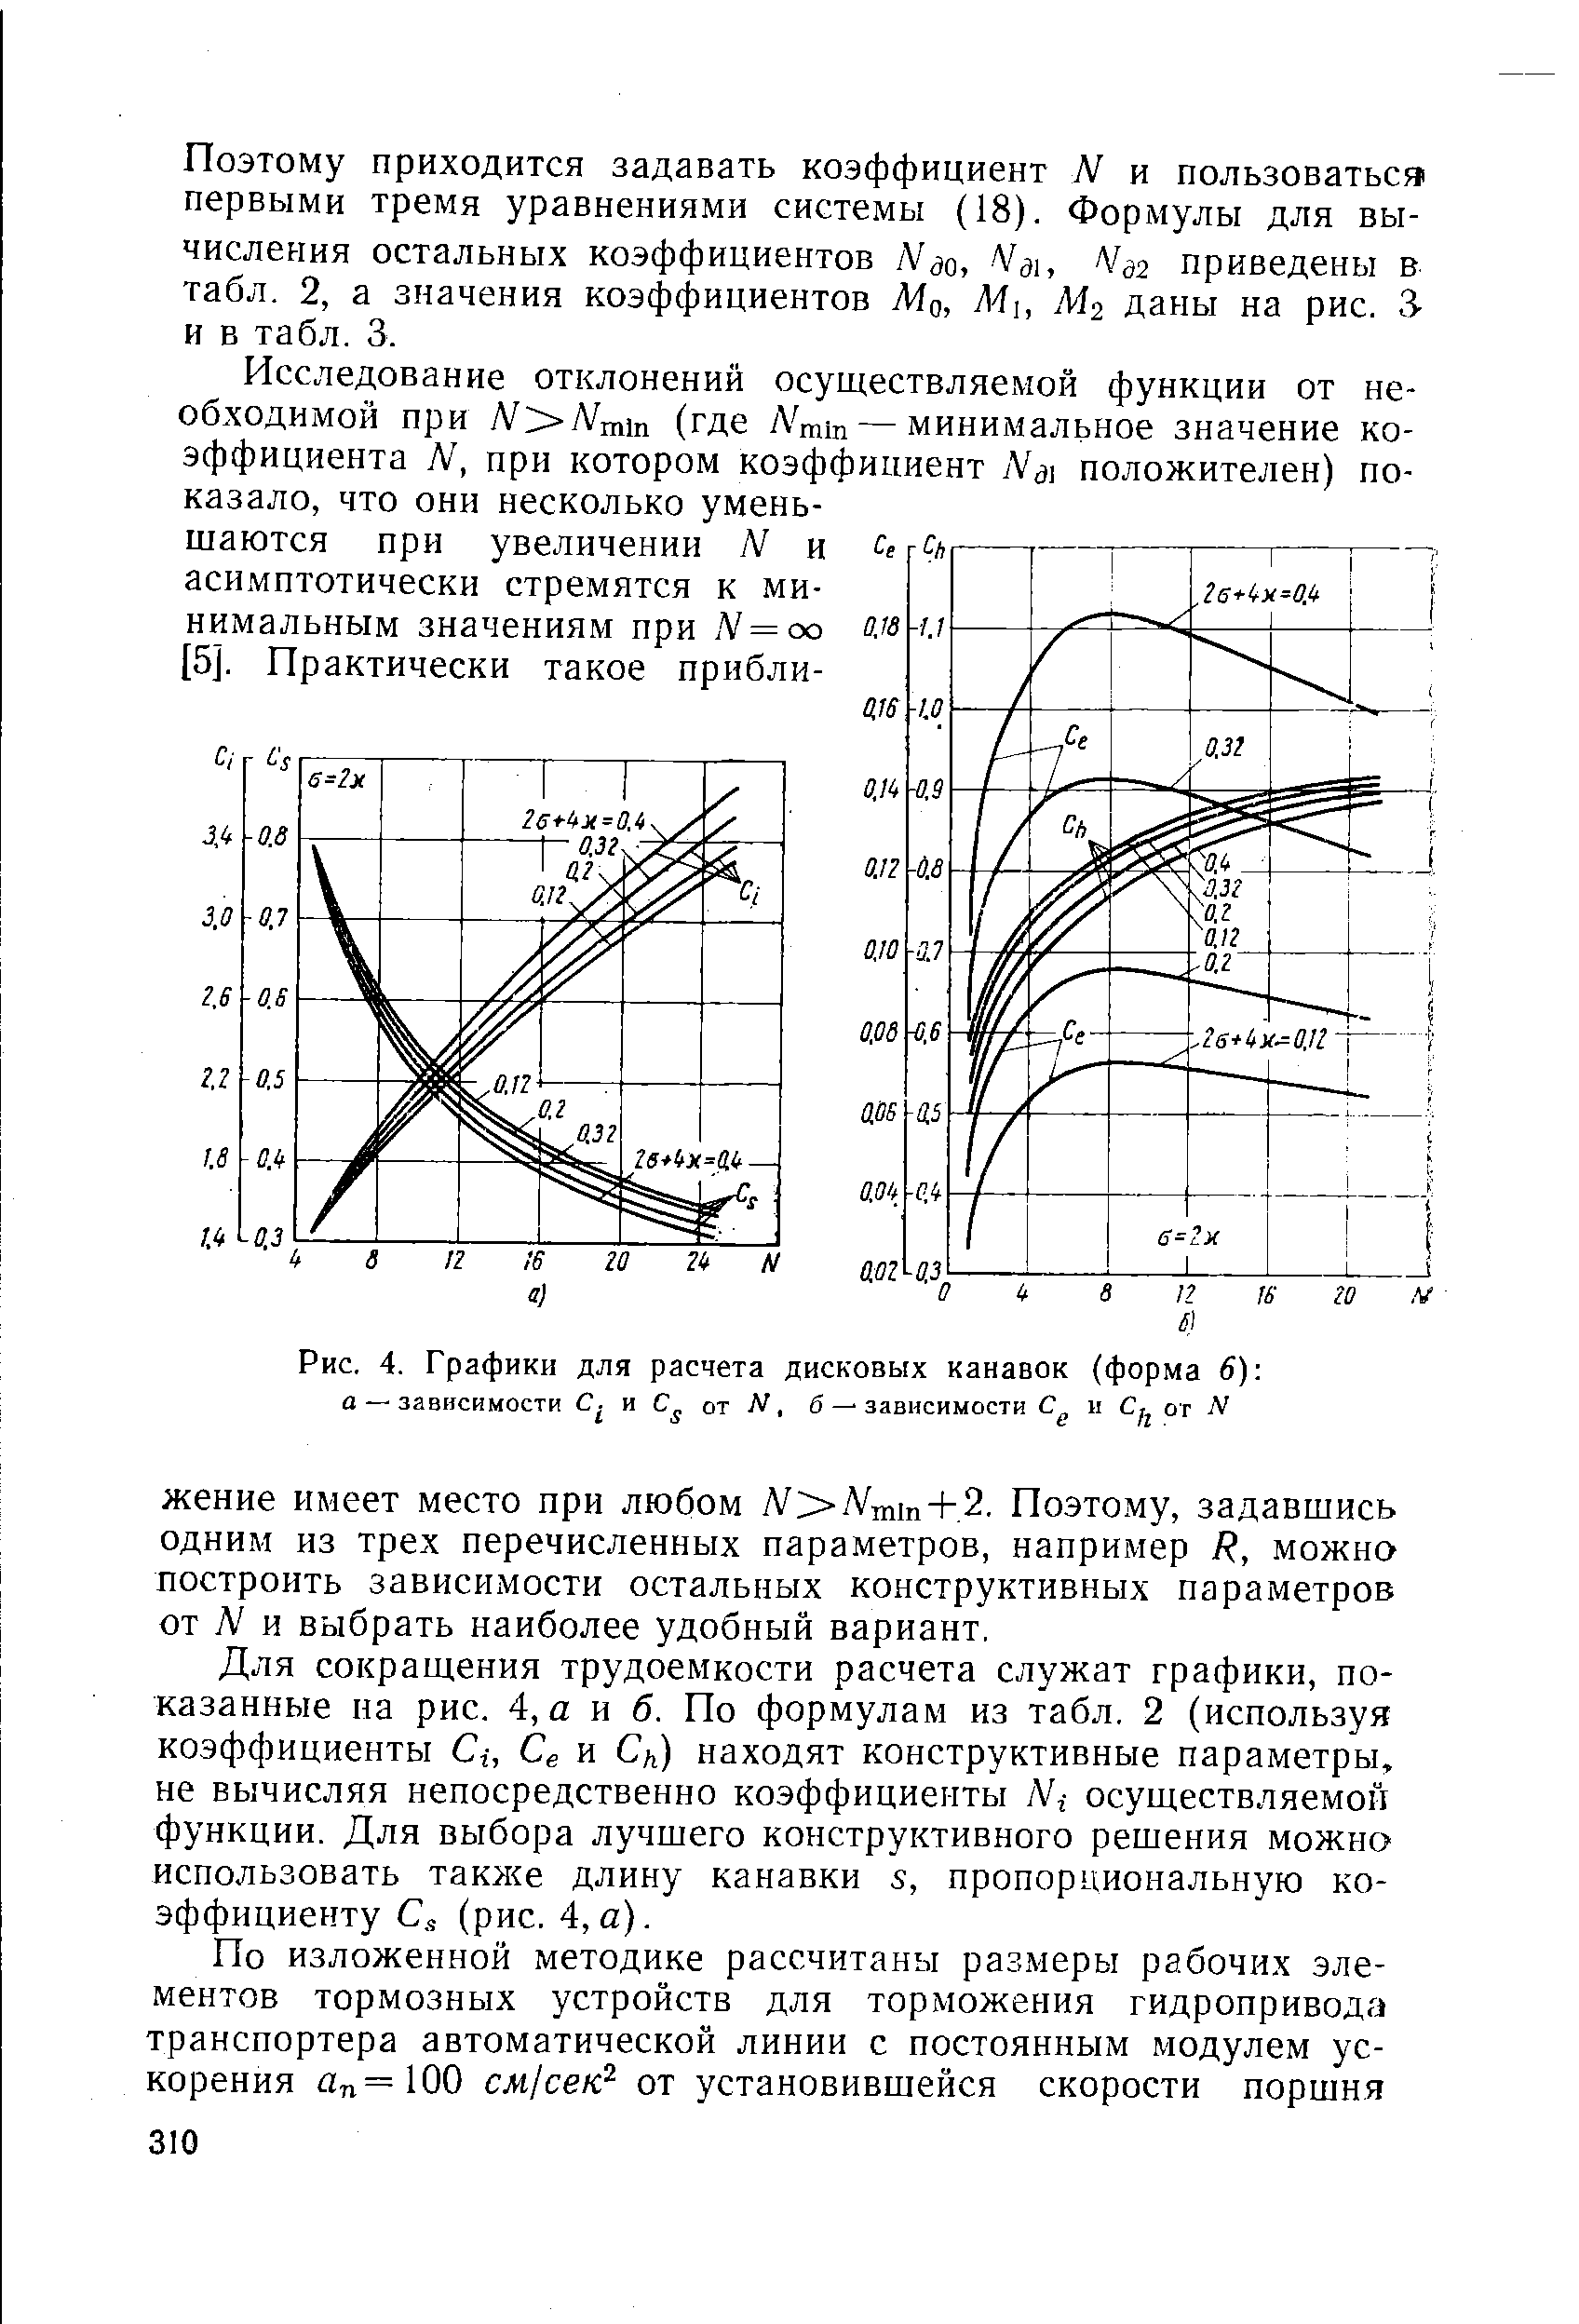 Рис. 4. Графики для расчета дисковых канавок (форма 6) 
